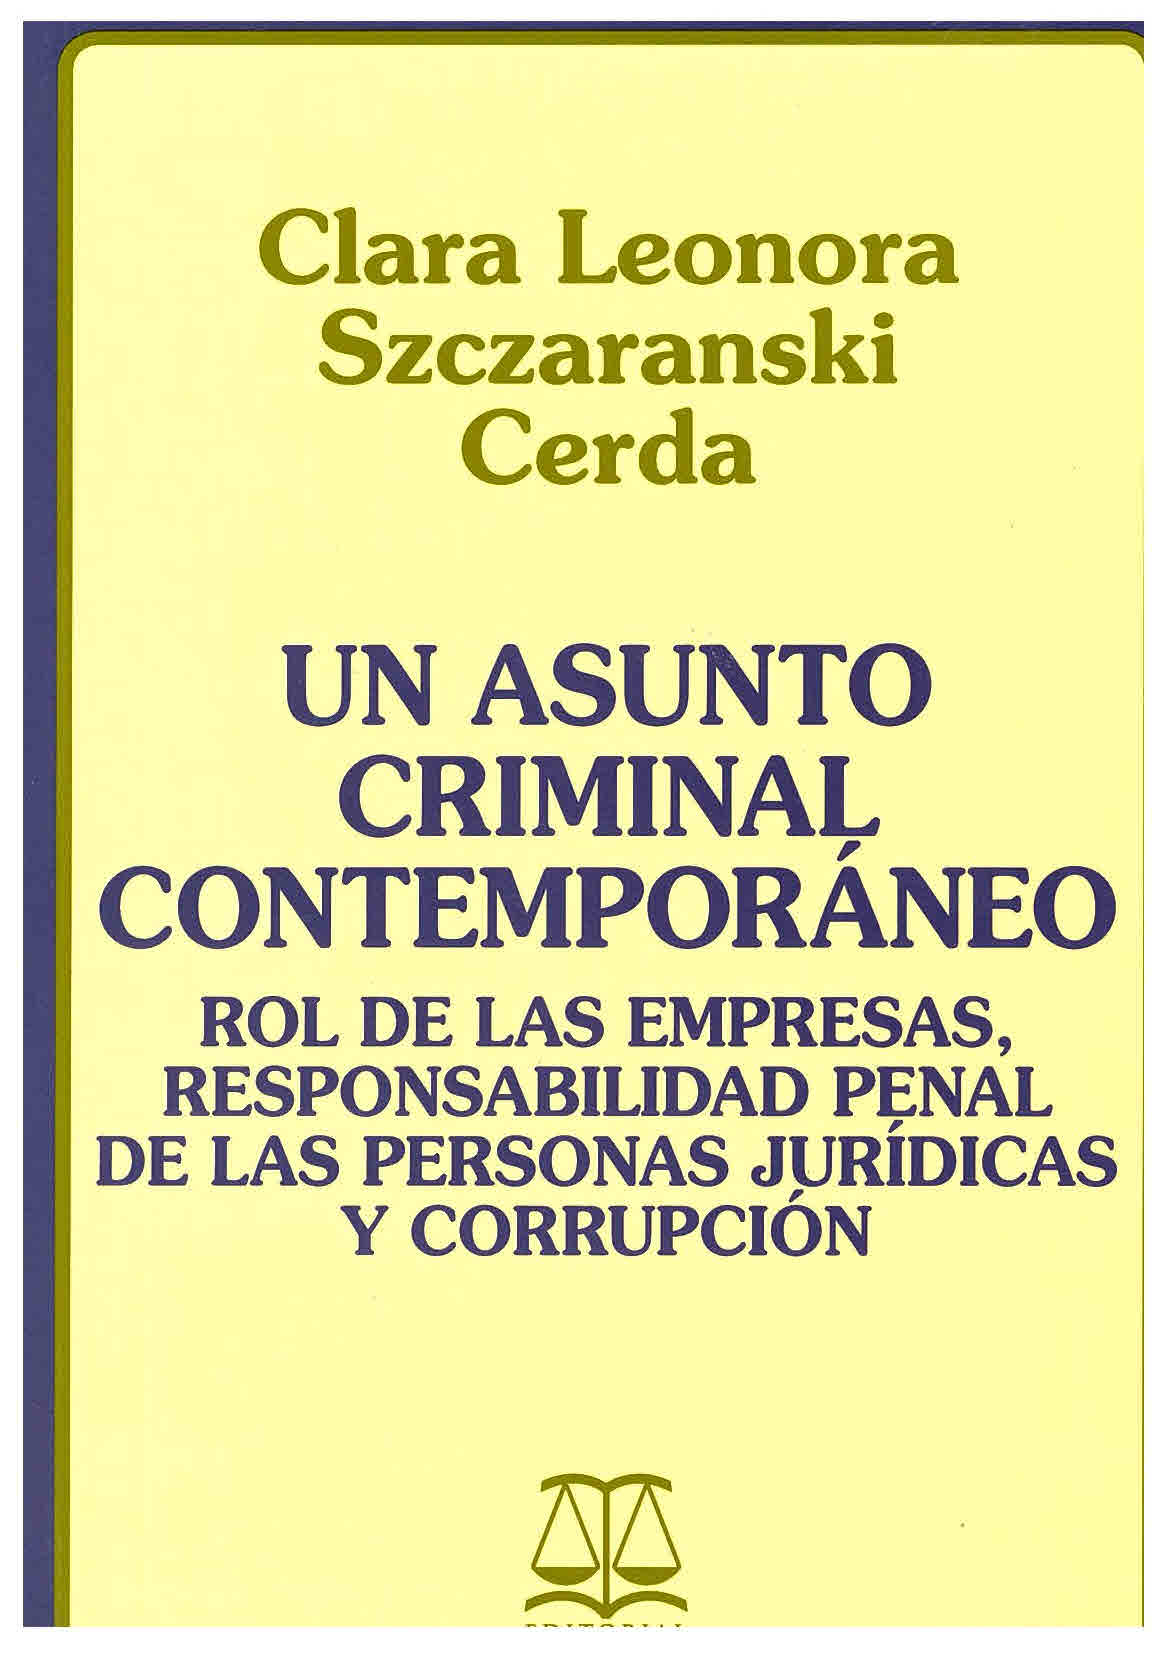 Un asunto criminal contemporáneo: Rol de las empresas, responsabilidad penal de las personas jurídicas y corrupción